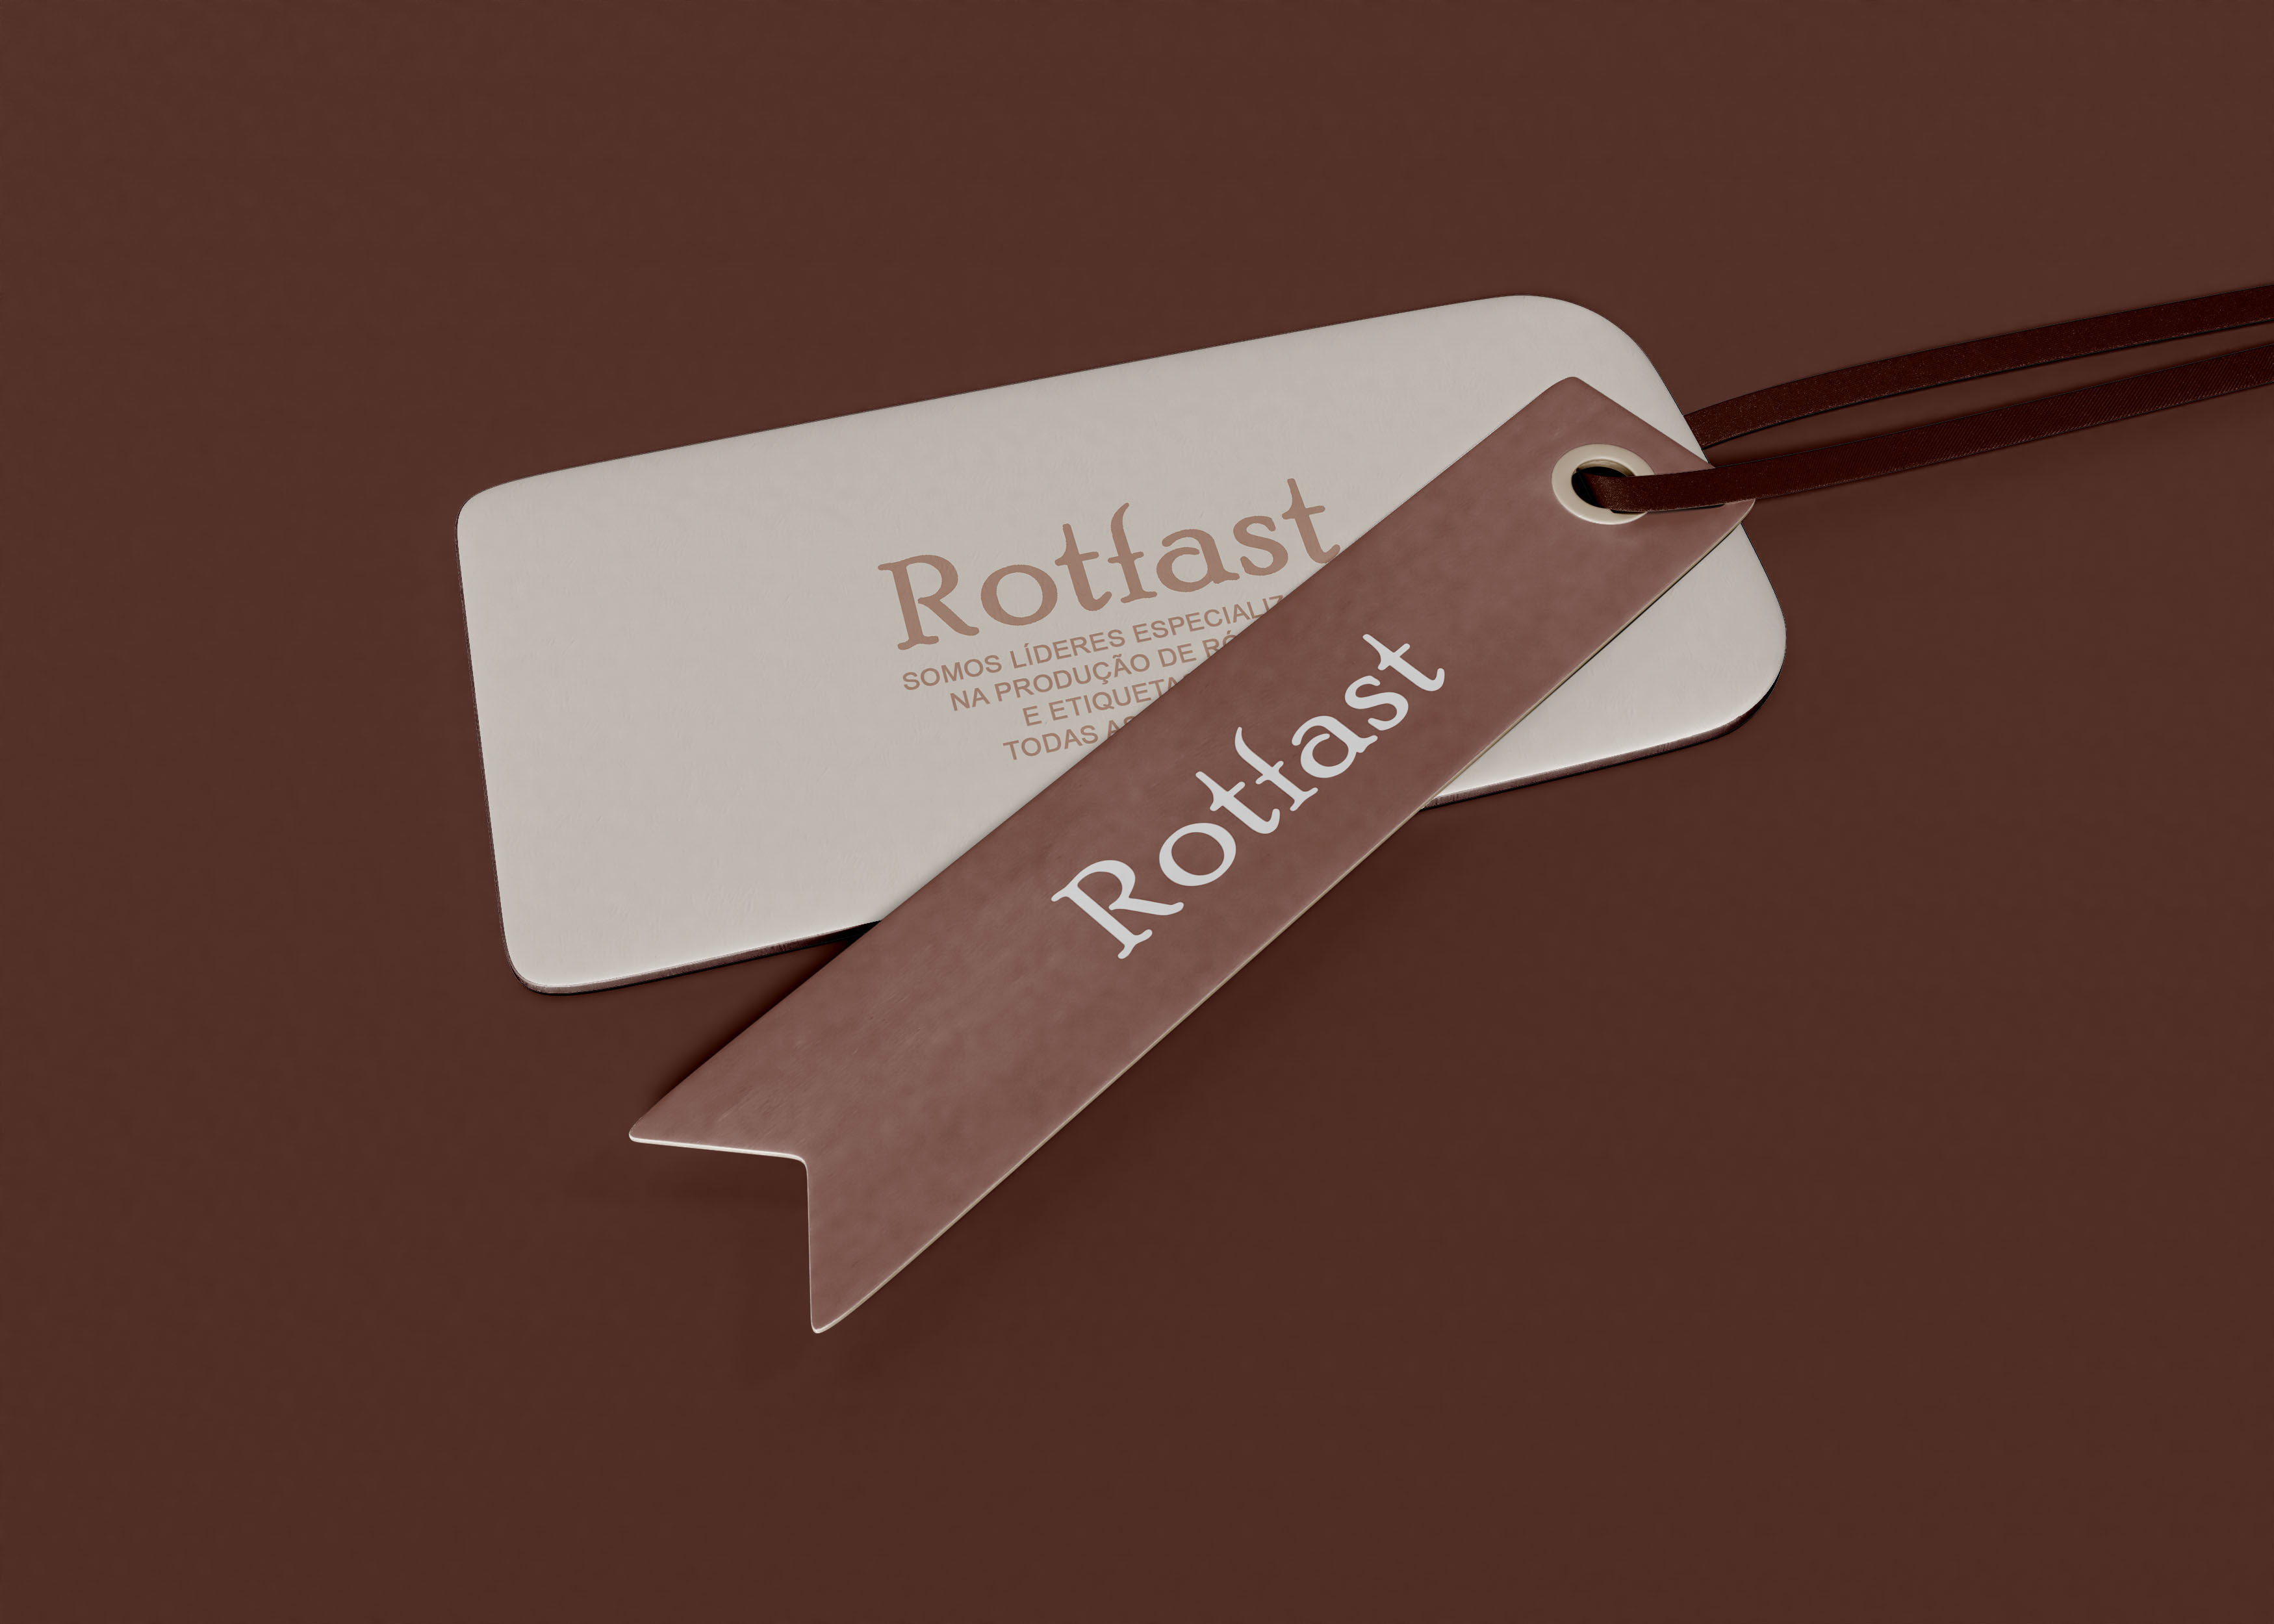 Rotfast - Rótulos e Etiquetas